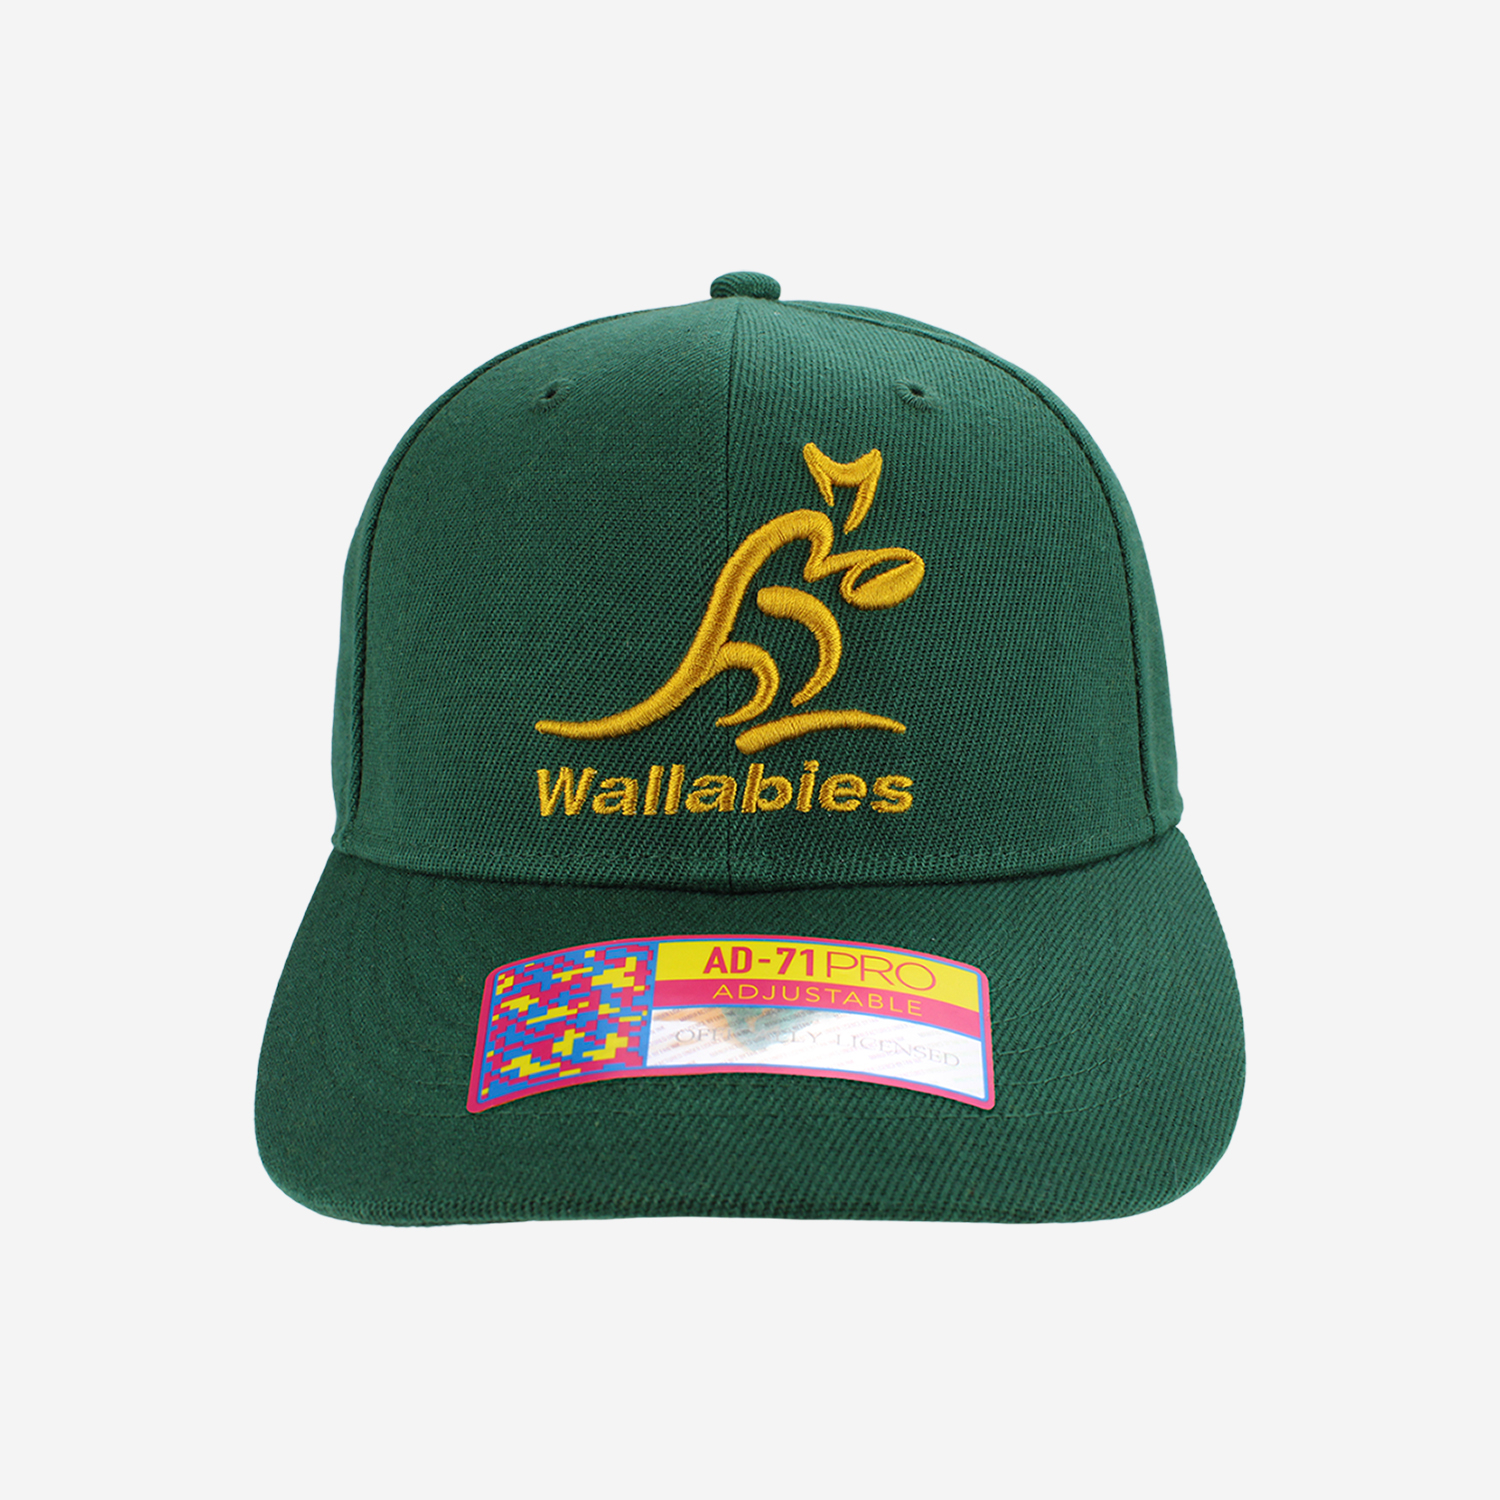 Wallabies caps